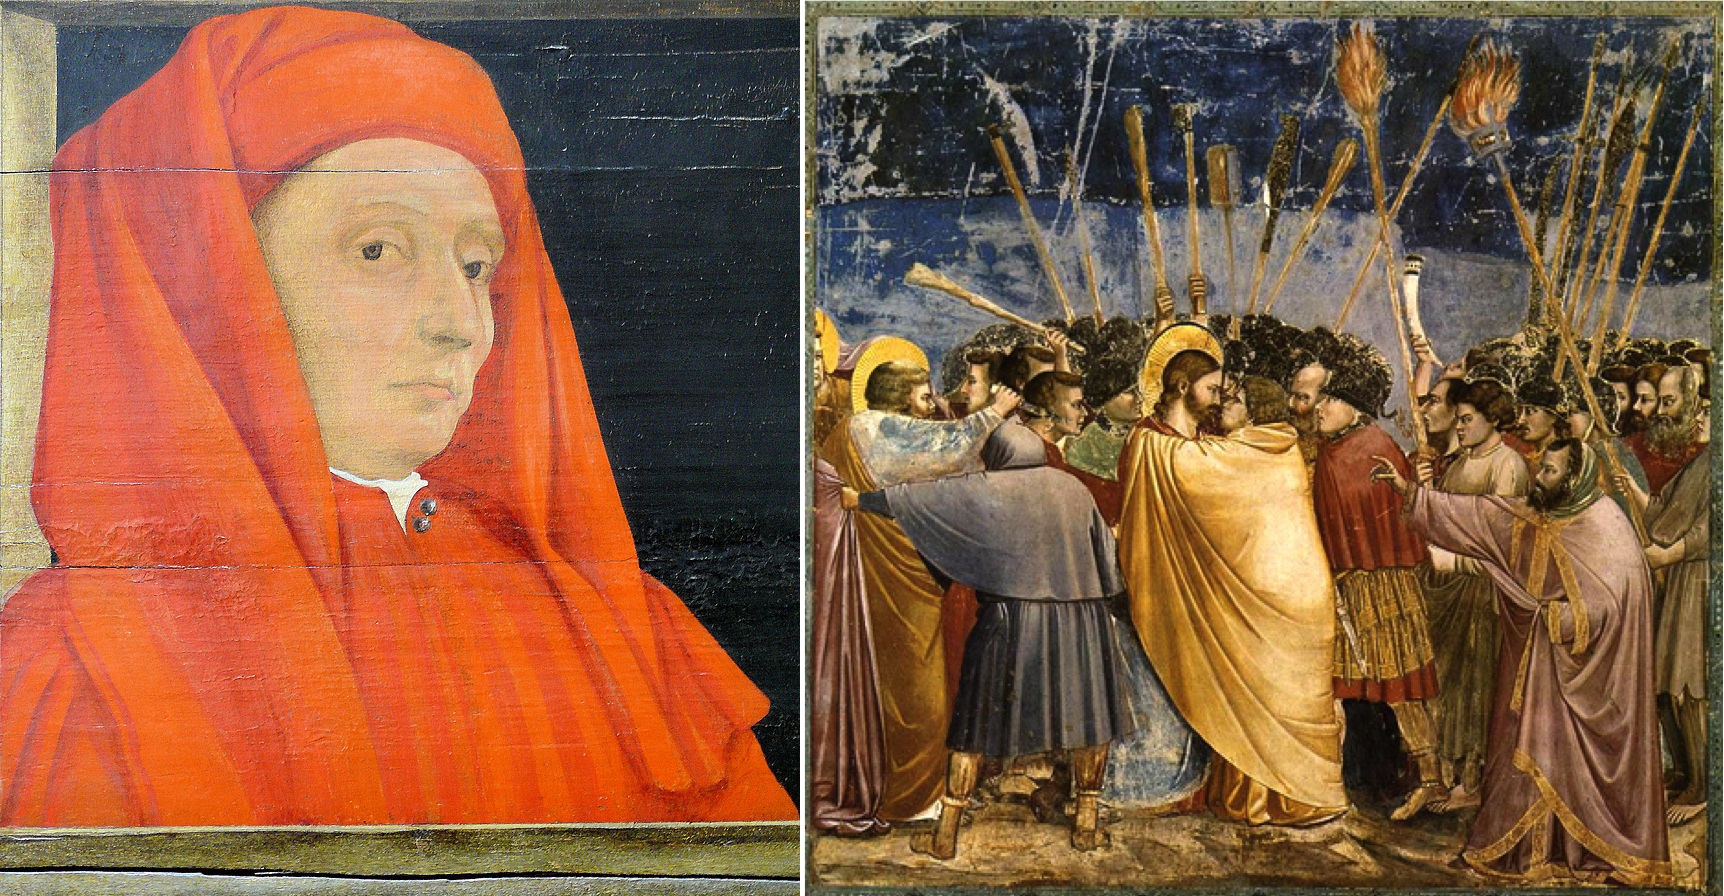 800px Giotto Tableau representant cinq maitres de la Renaissance florentine debut XVIe siecle